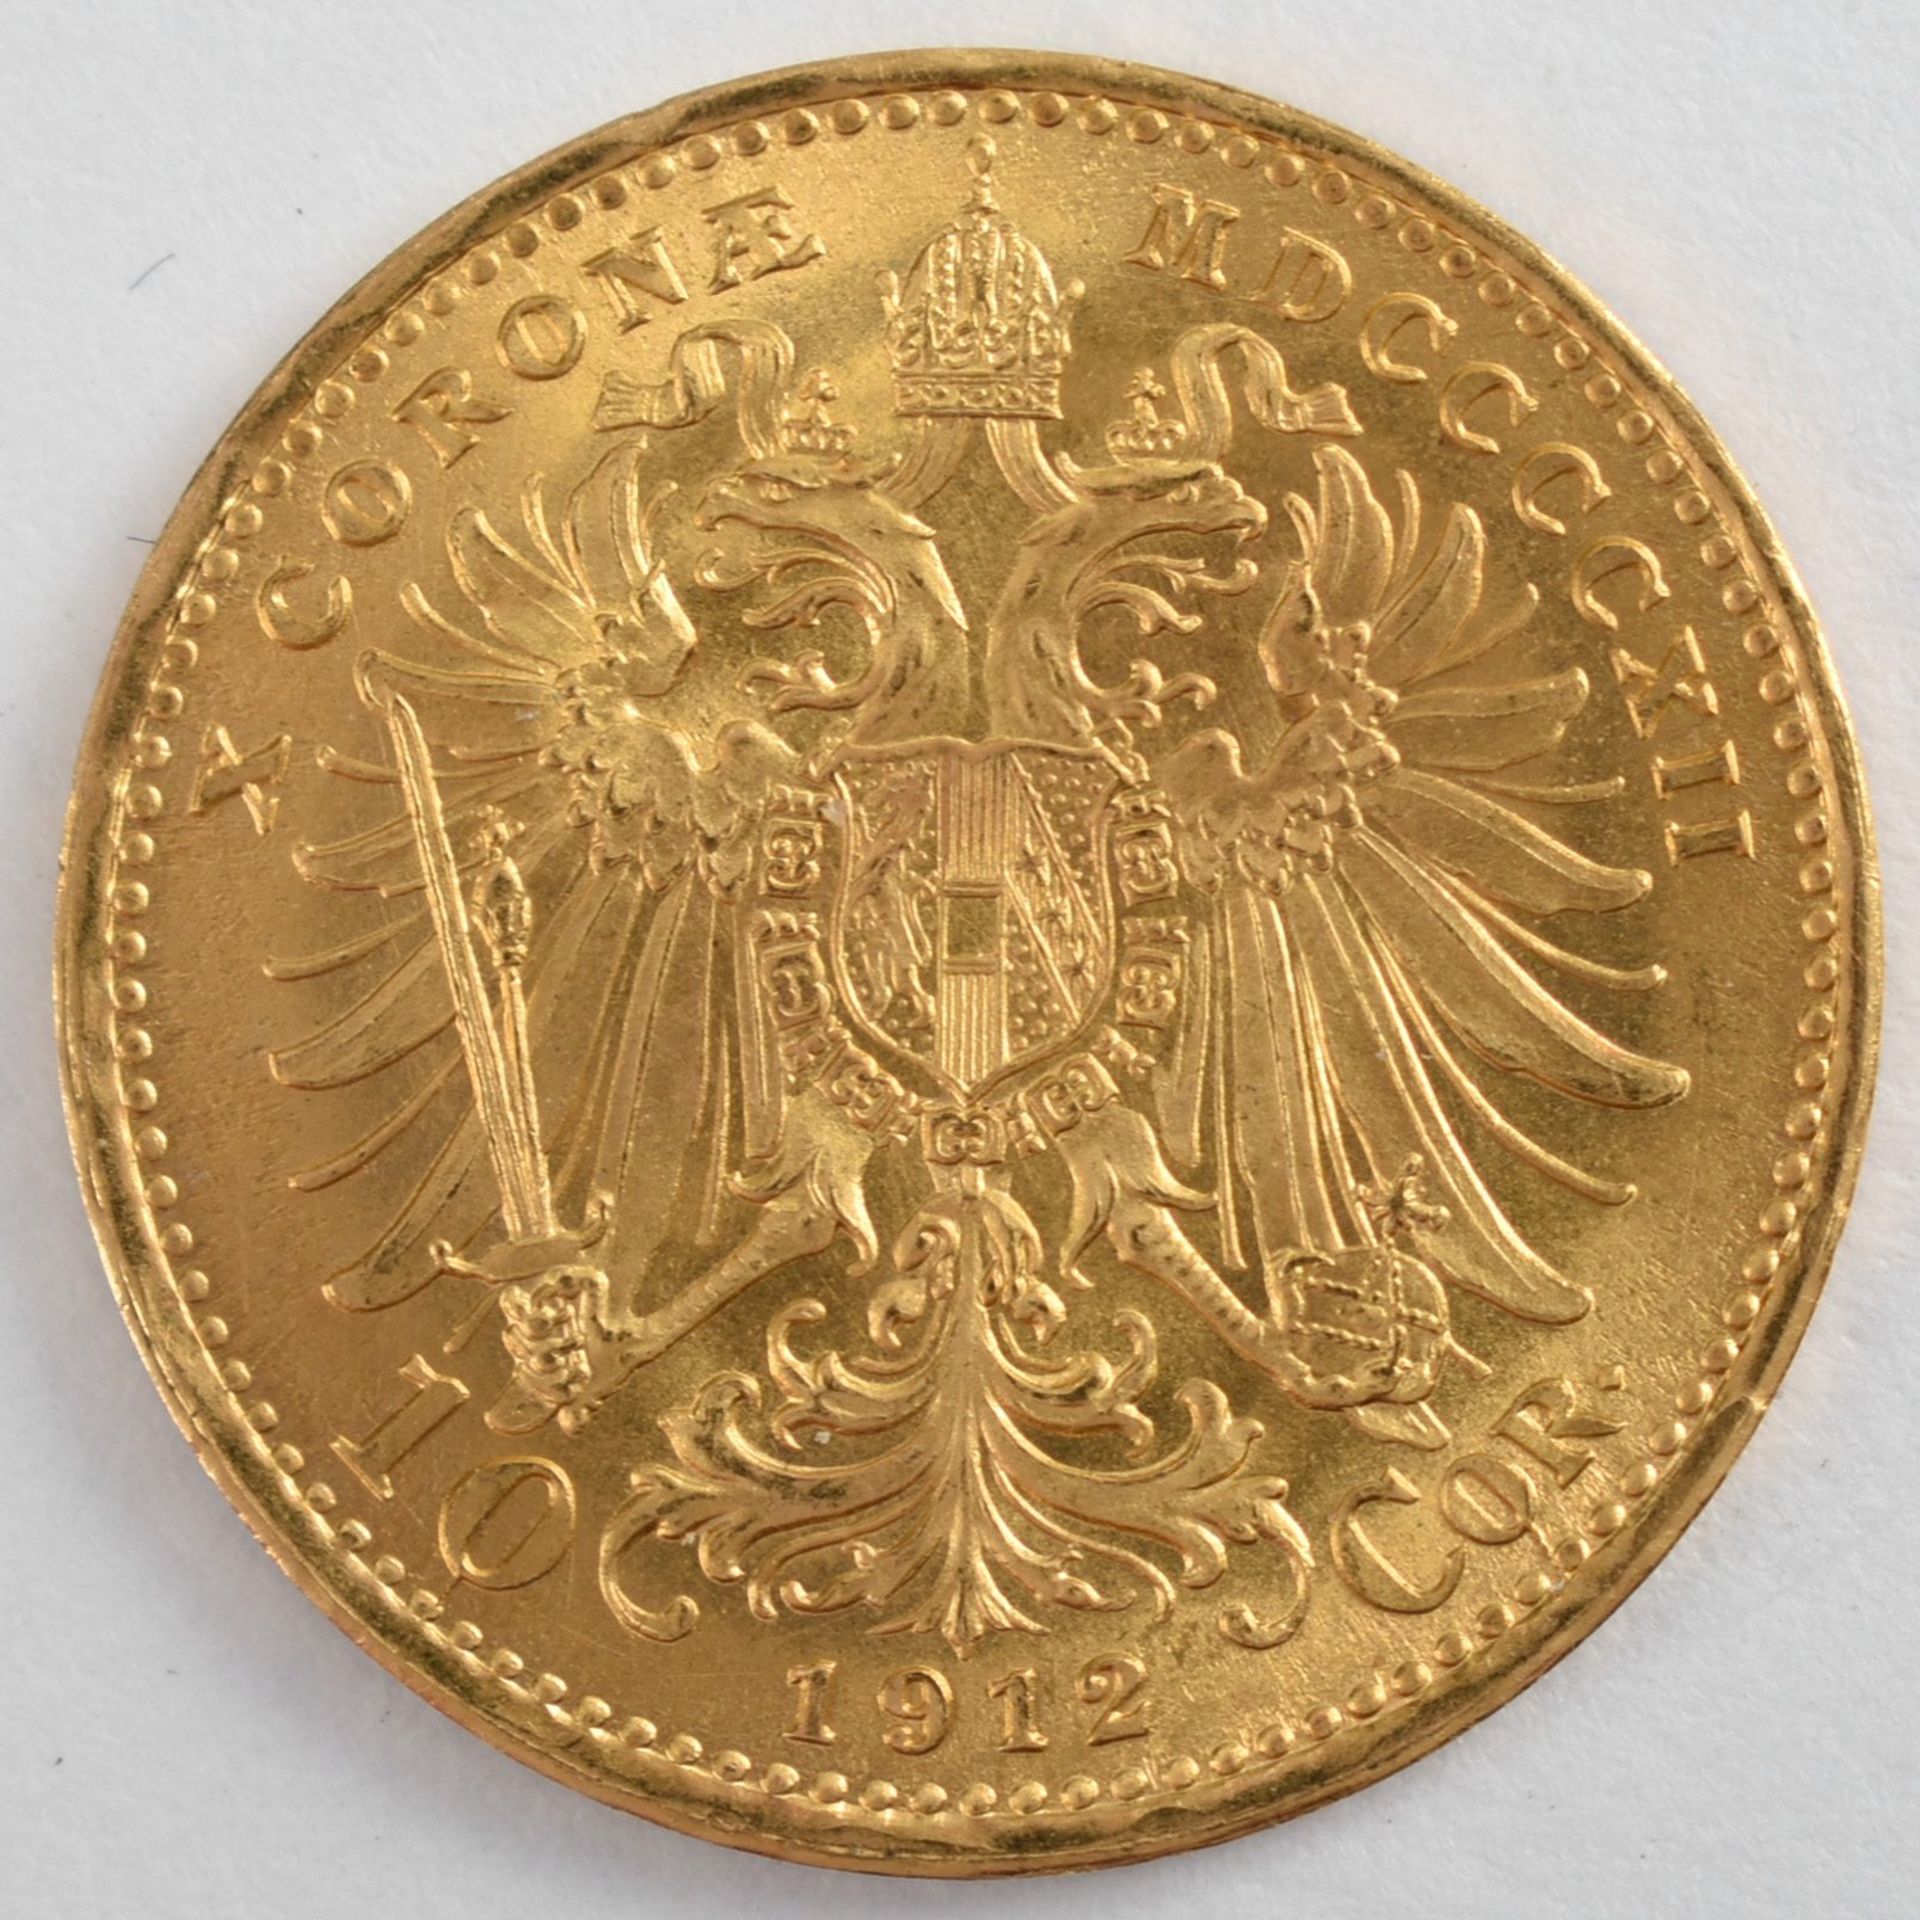 Goldmünze Österreich - Kaiserzeit 1912 10 Kronen in Gold, 900/1000, 3,387 g, D ca. 19 mm, av. Kaiser - Bild 3 aus 3